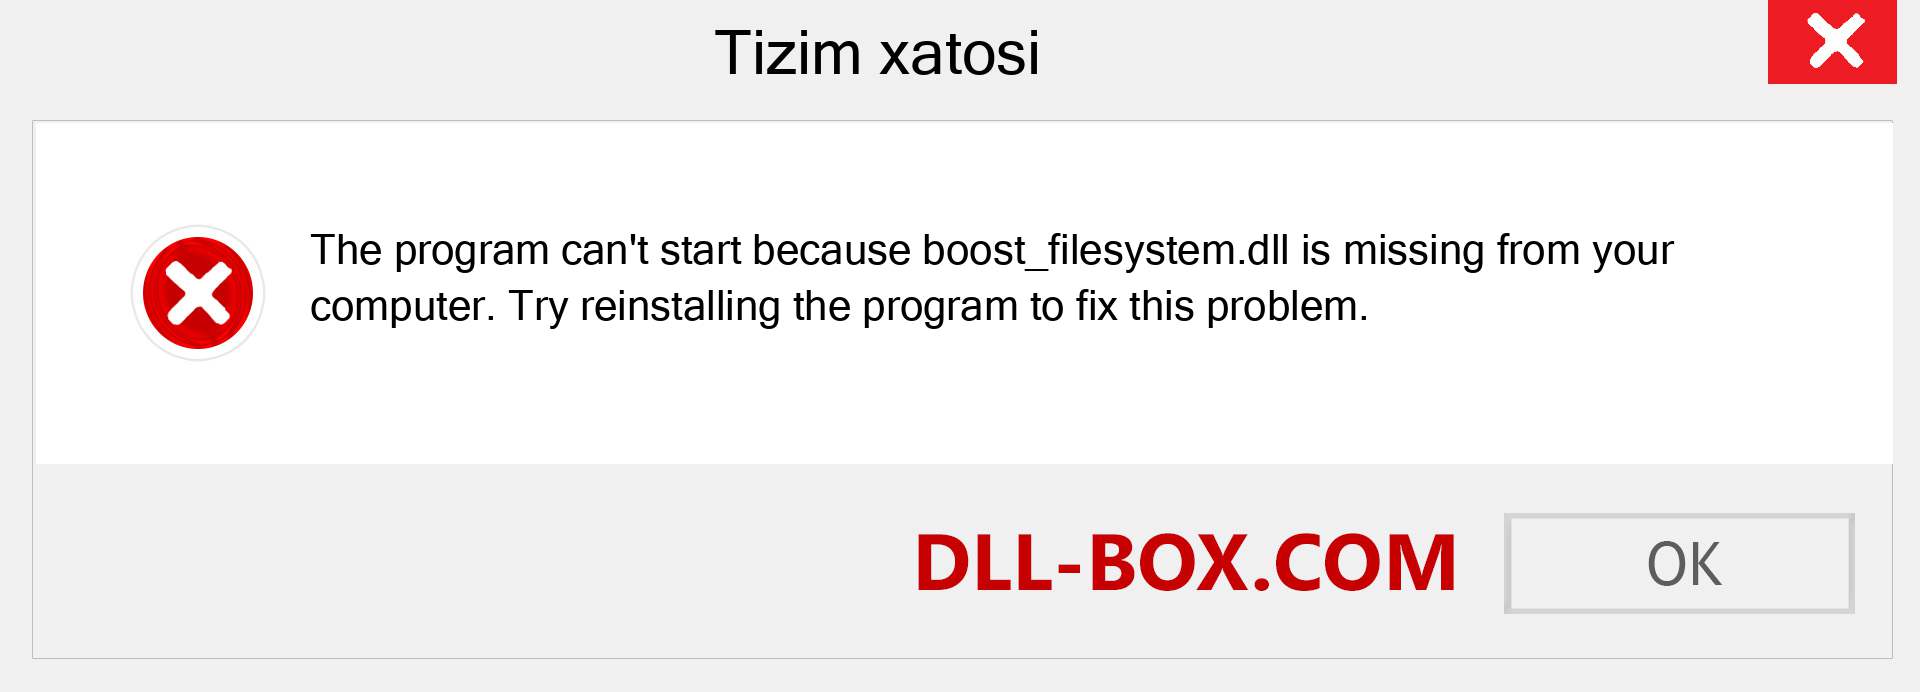 boost_filesystem.dll fayli yo'qolganmi?. Windows 7, 8, 10 uchun yuklab olish - Windowsda boost_filesystem dll etishmayotgan xatoni tuzating, rasmlar, rasmlar